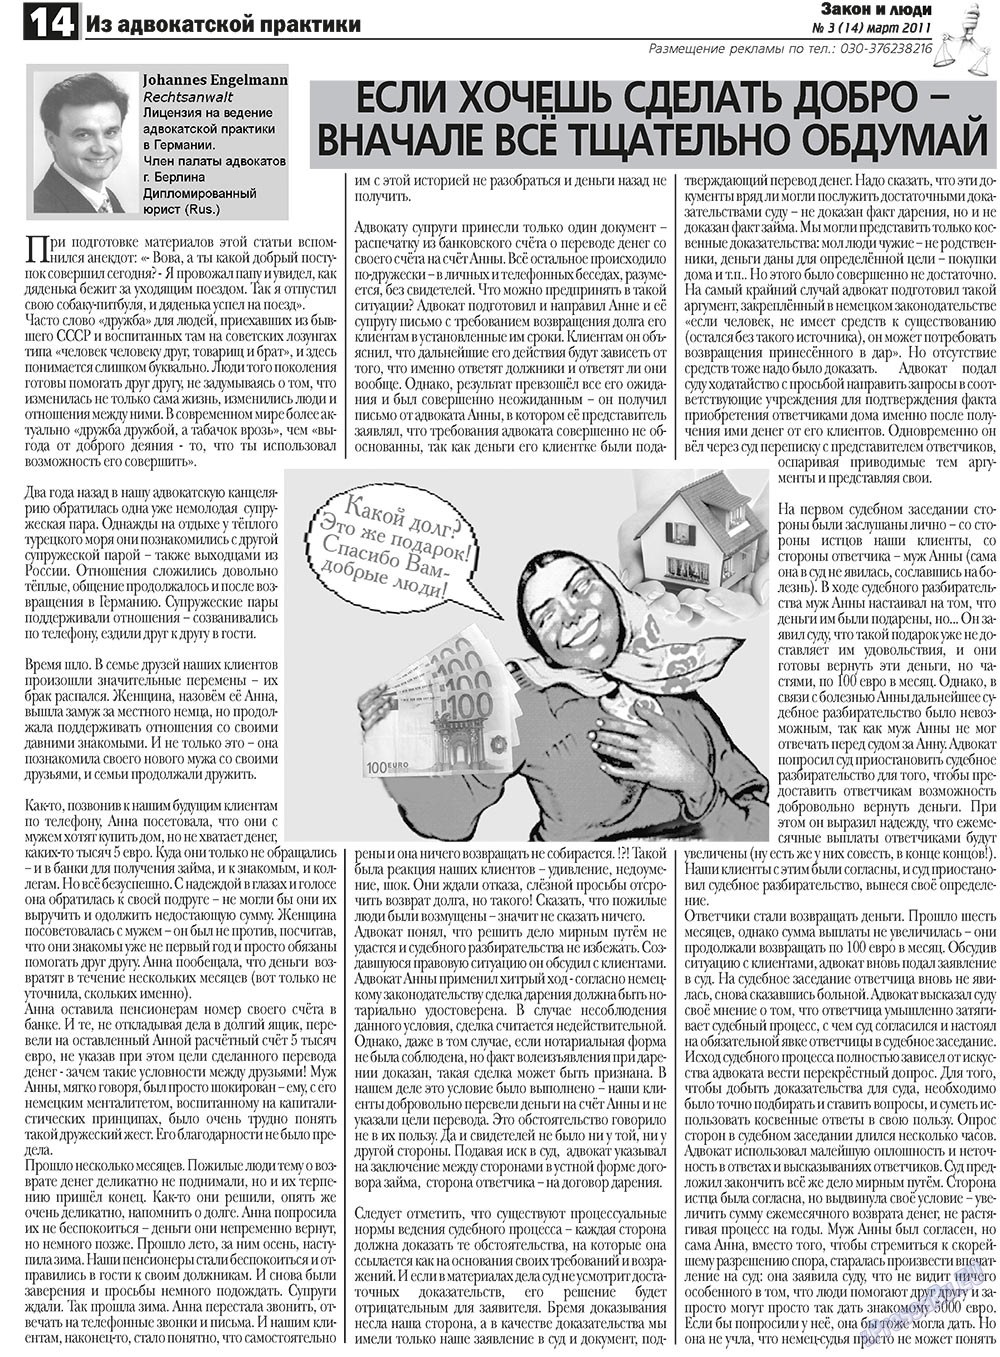 Закон и люди, газета. 2011 №3 стр.14